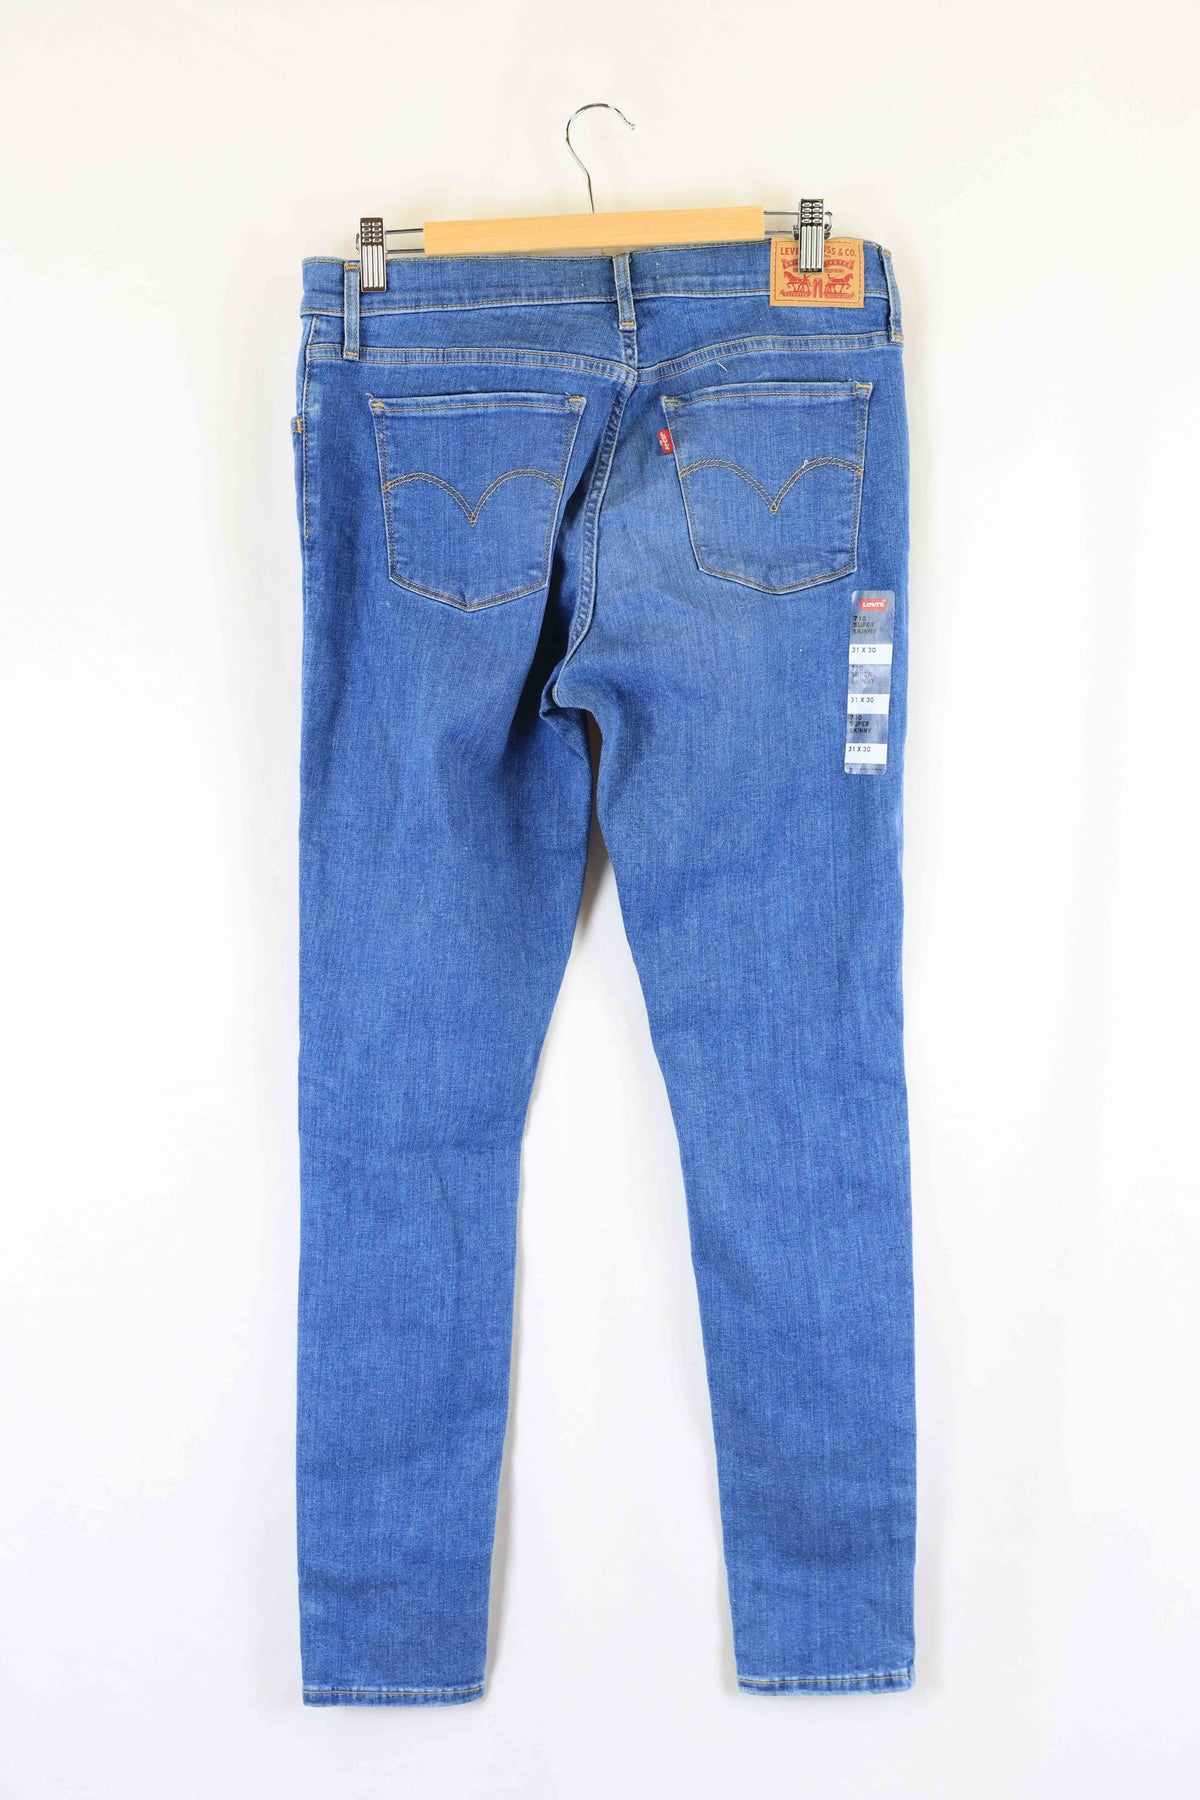 Levis 710 Super skinny Blue Jeans 13